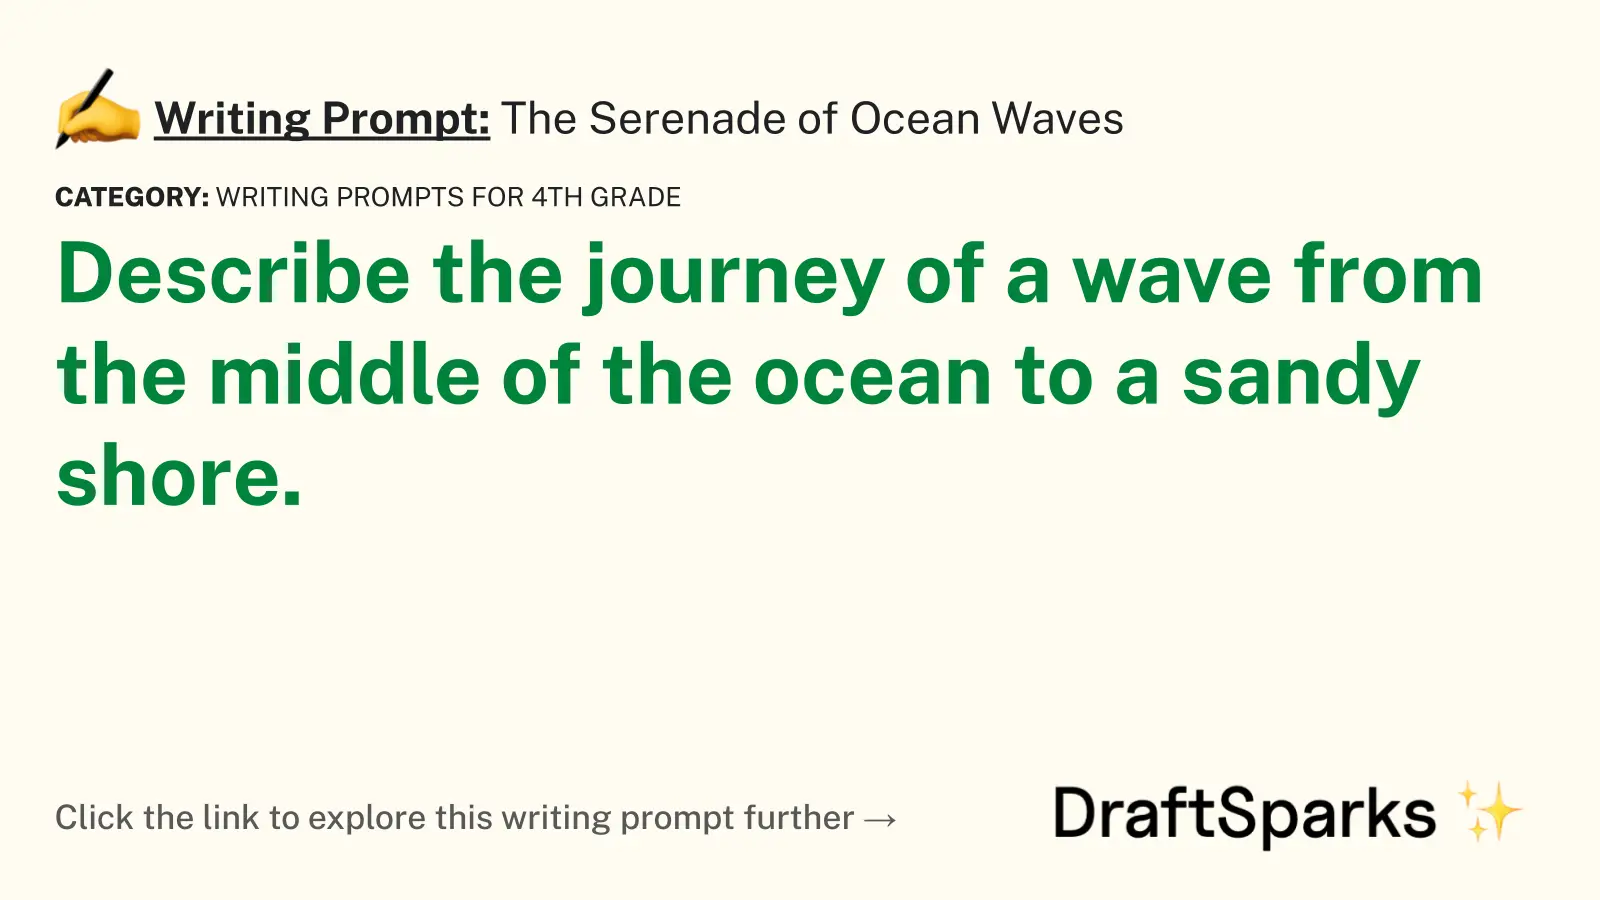 The Serenade of Ocean Waves